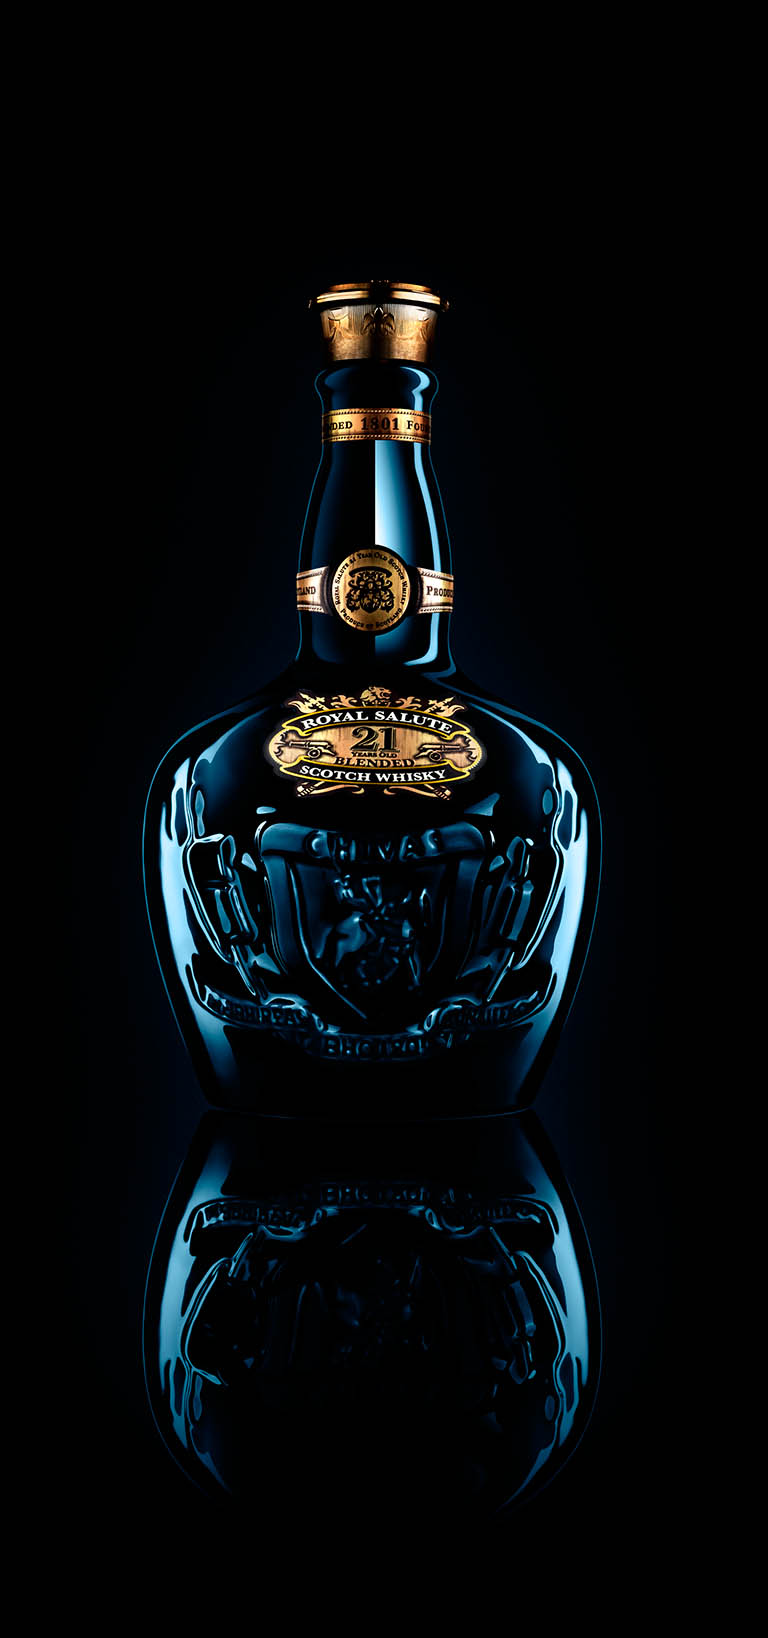 Packshot Factory - Spirit - Chivas Royal Salute whisky bottle